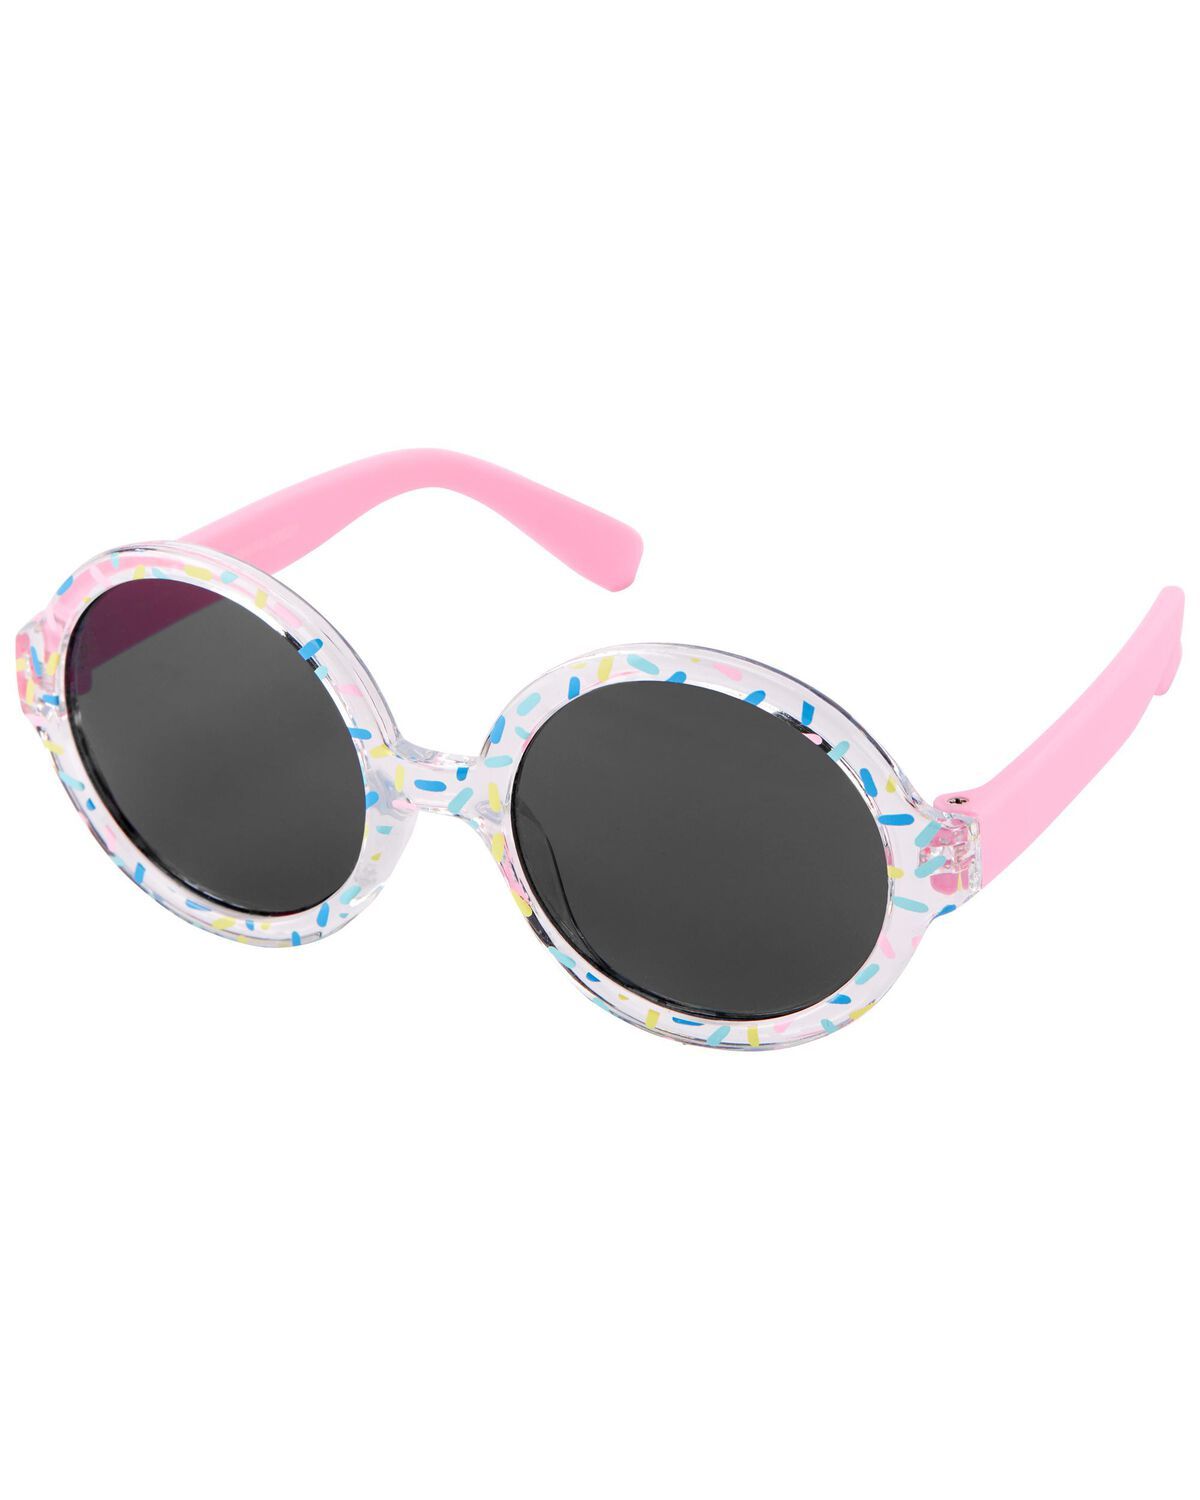 Multi Baby Confetti Round Sunglasses | carters.com | Carter's